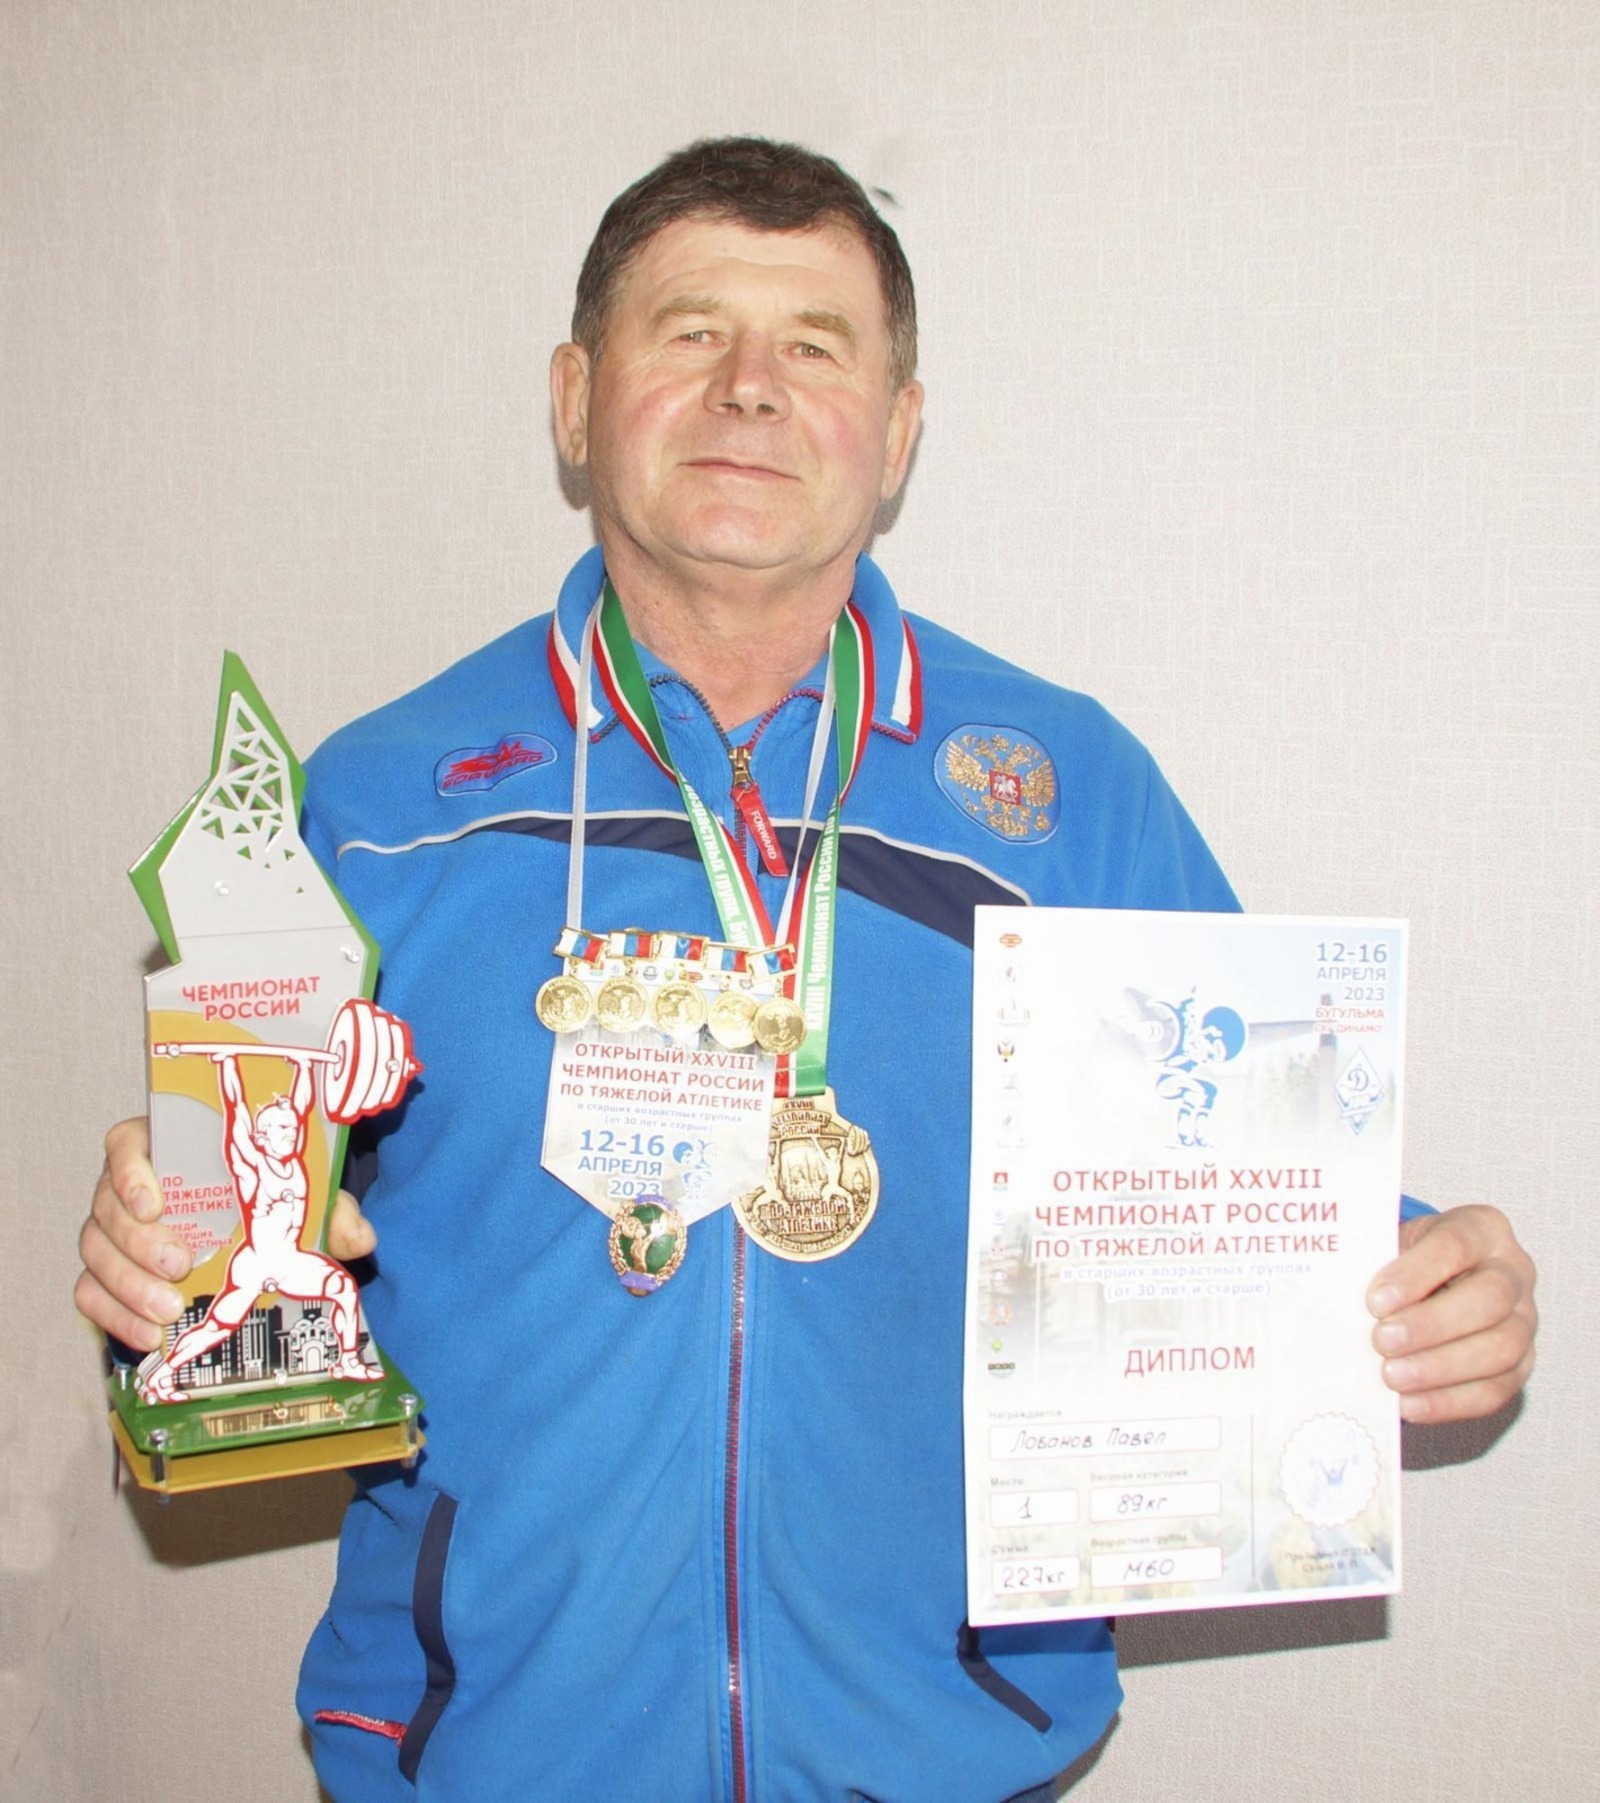 Тяжелоатлет из Башкирии установил 5 новых всероссийских рекордов